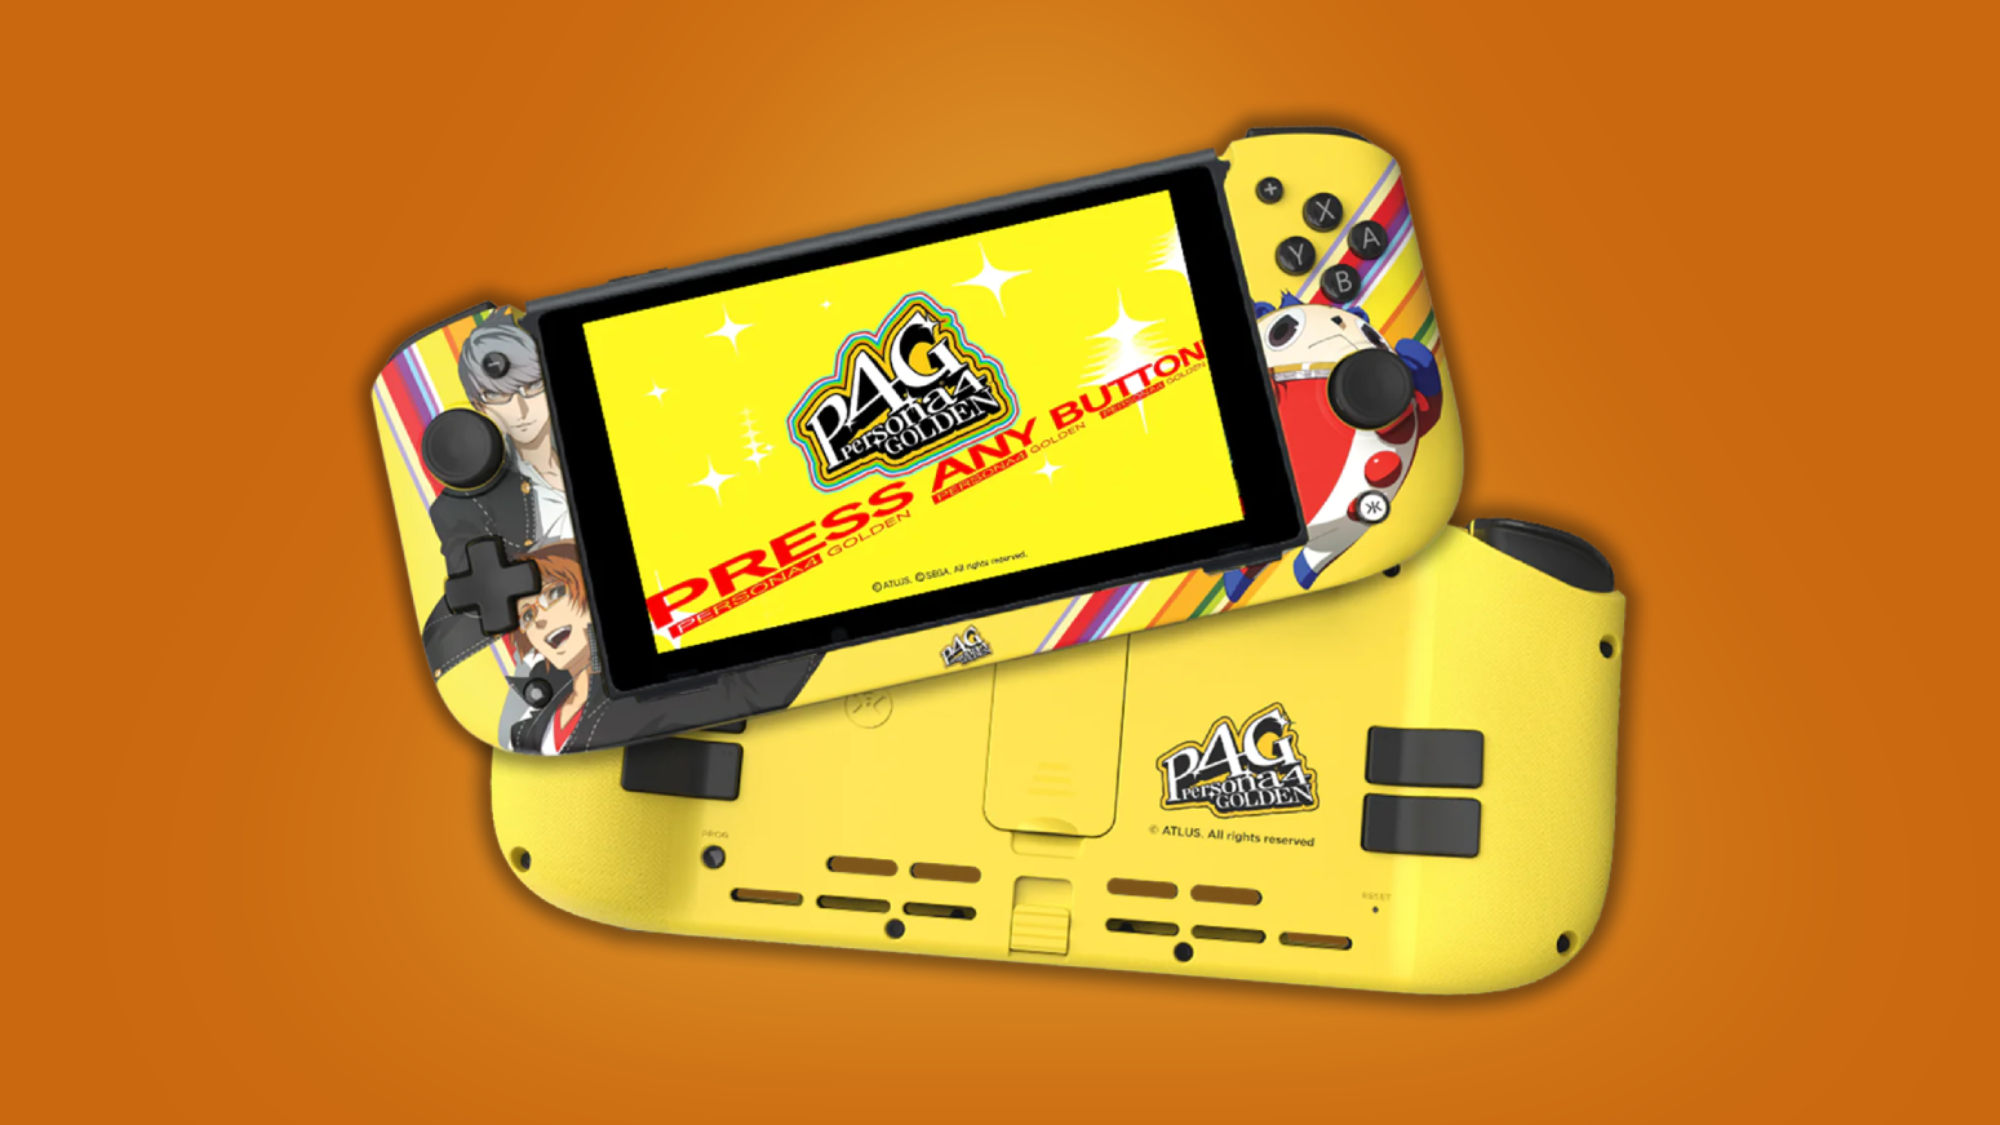 این نیترو دک با موضوع Persona 4 از Limited Run Games برای بازی بعدی شما عالی است